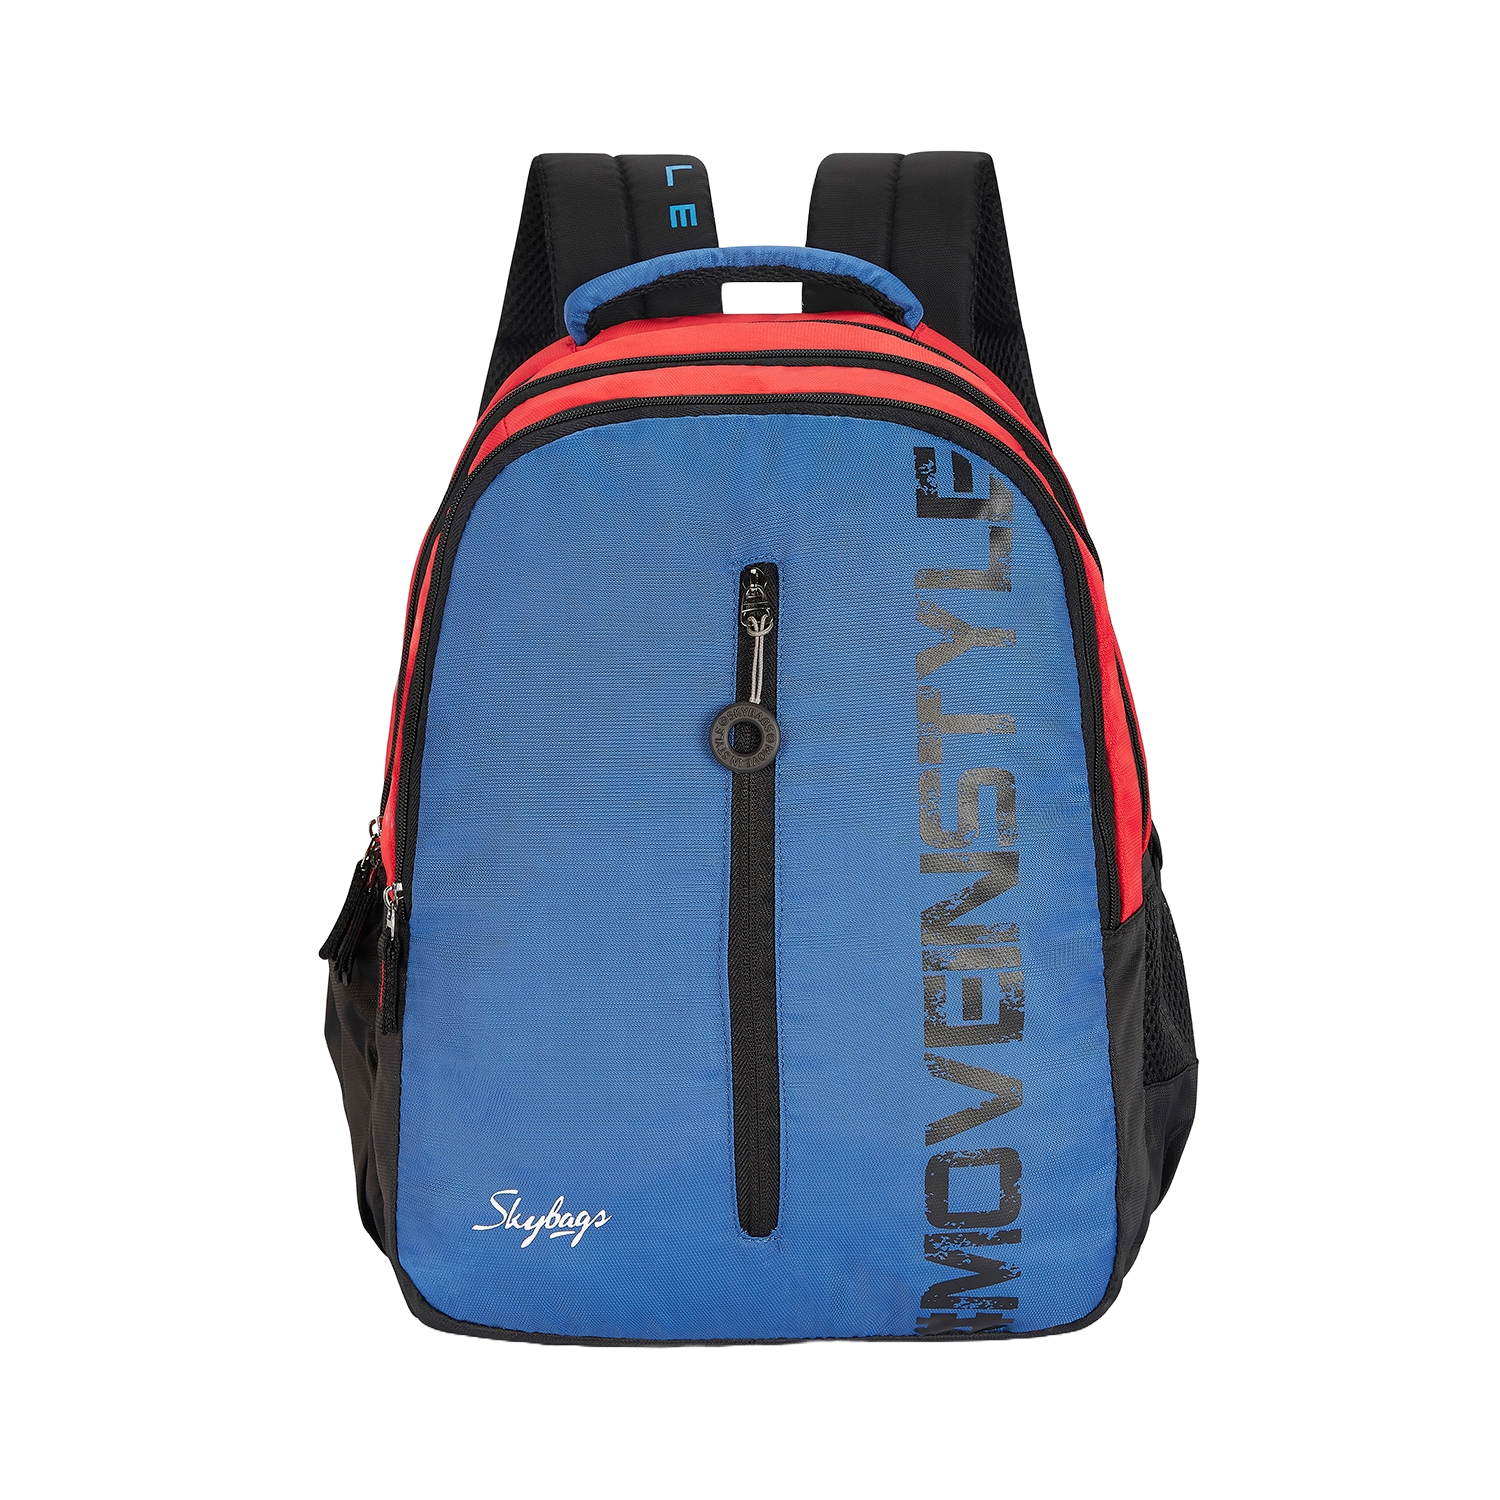 Neon Pink Multi Graffiti Backpack Set 2 in 1 Bookbag, Laptop Backpack for  School | eBay